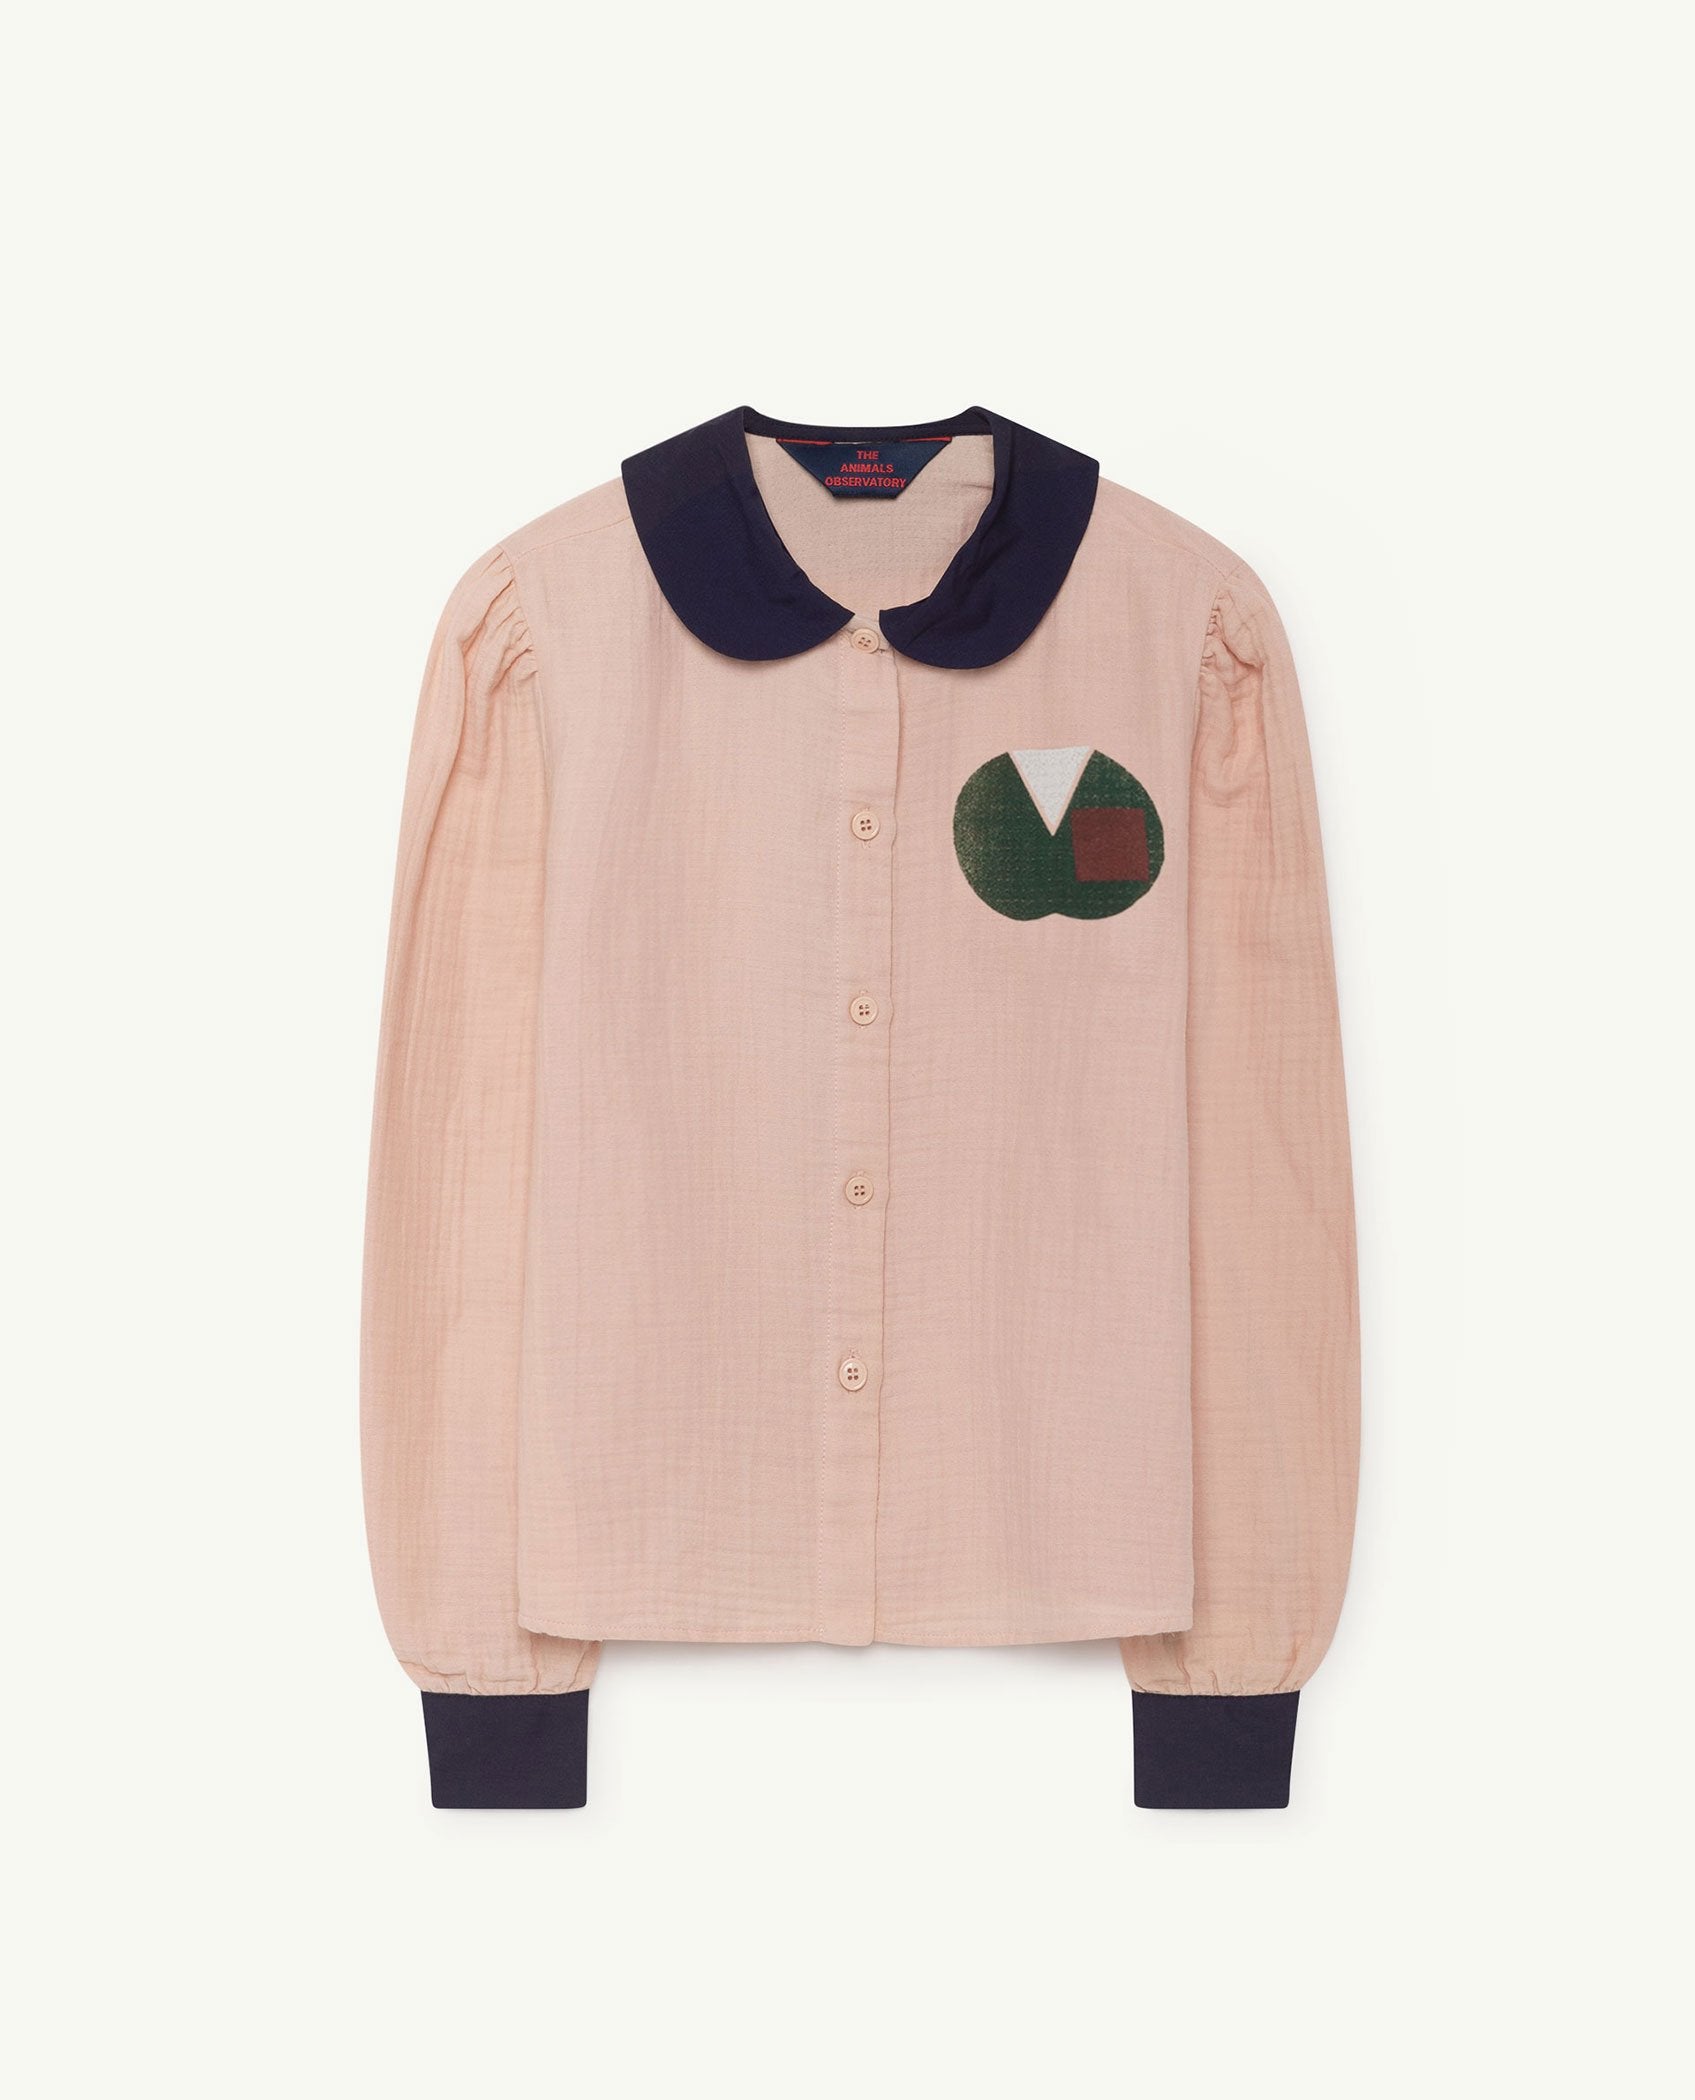 Pink Kangaroo Shirt PRODUCT FRONT